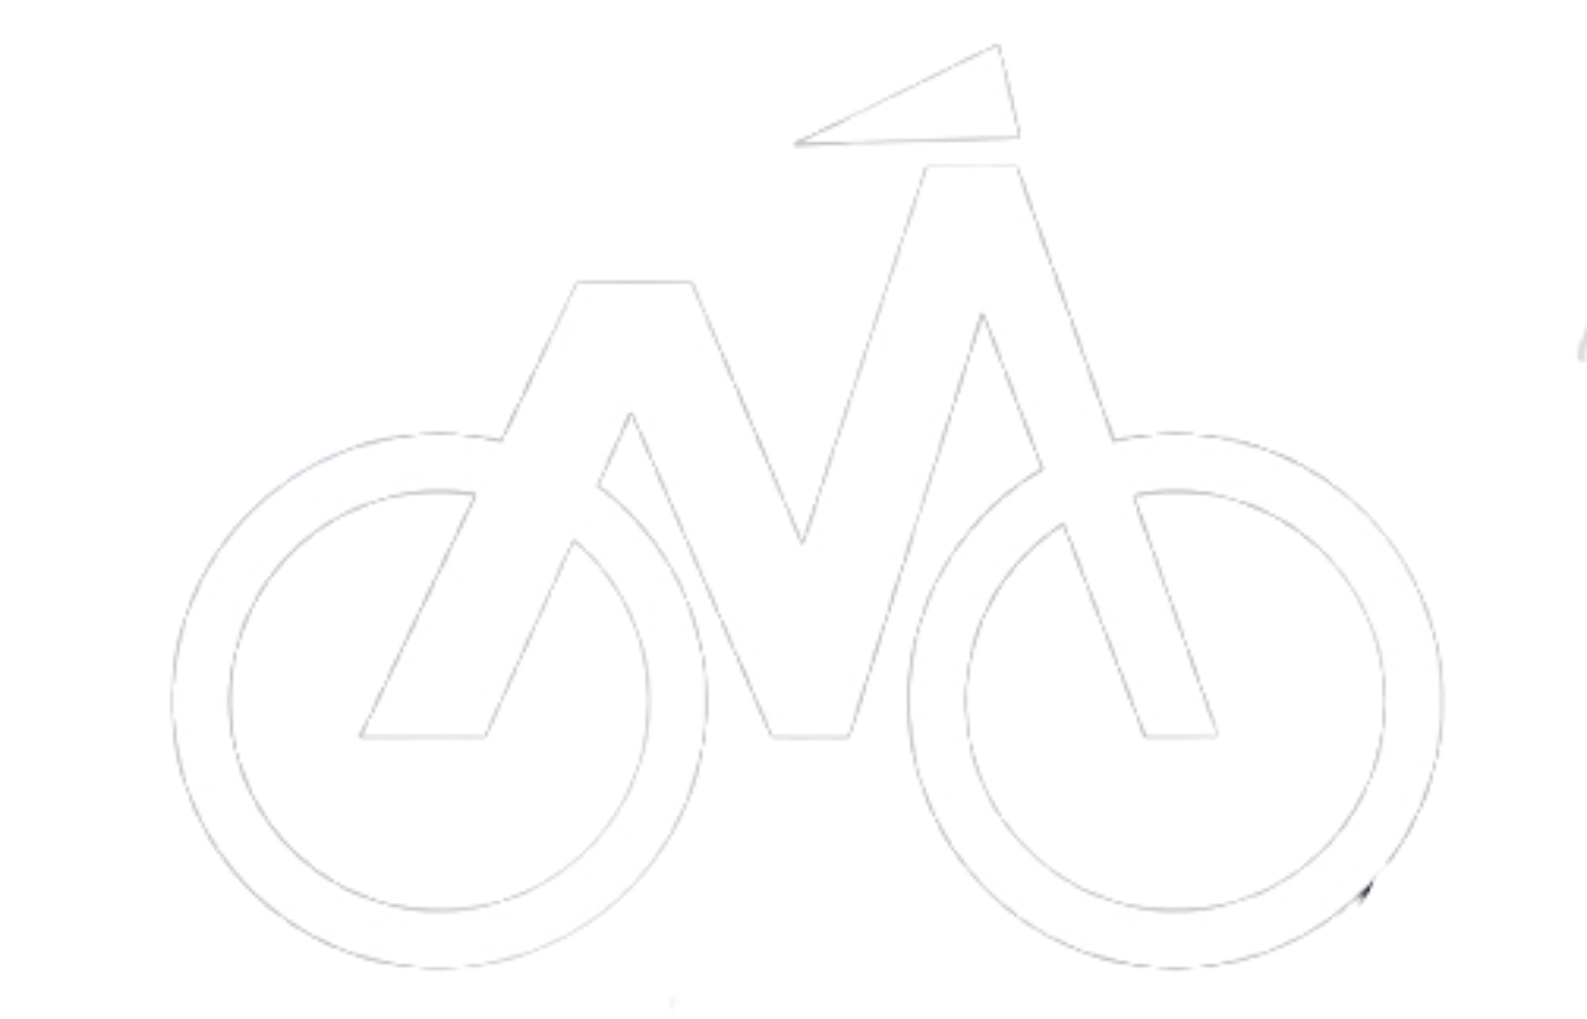 Logo Velo Małopolska sieć tras rowerowych